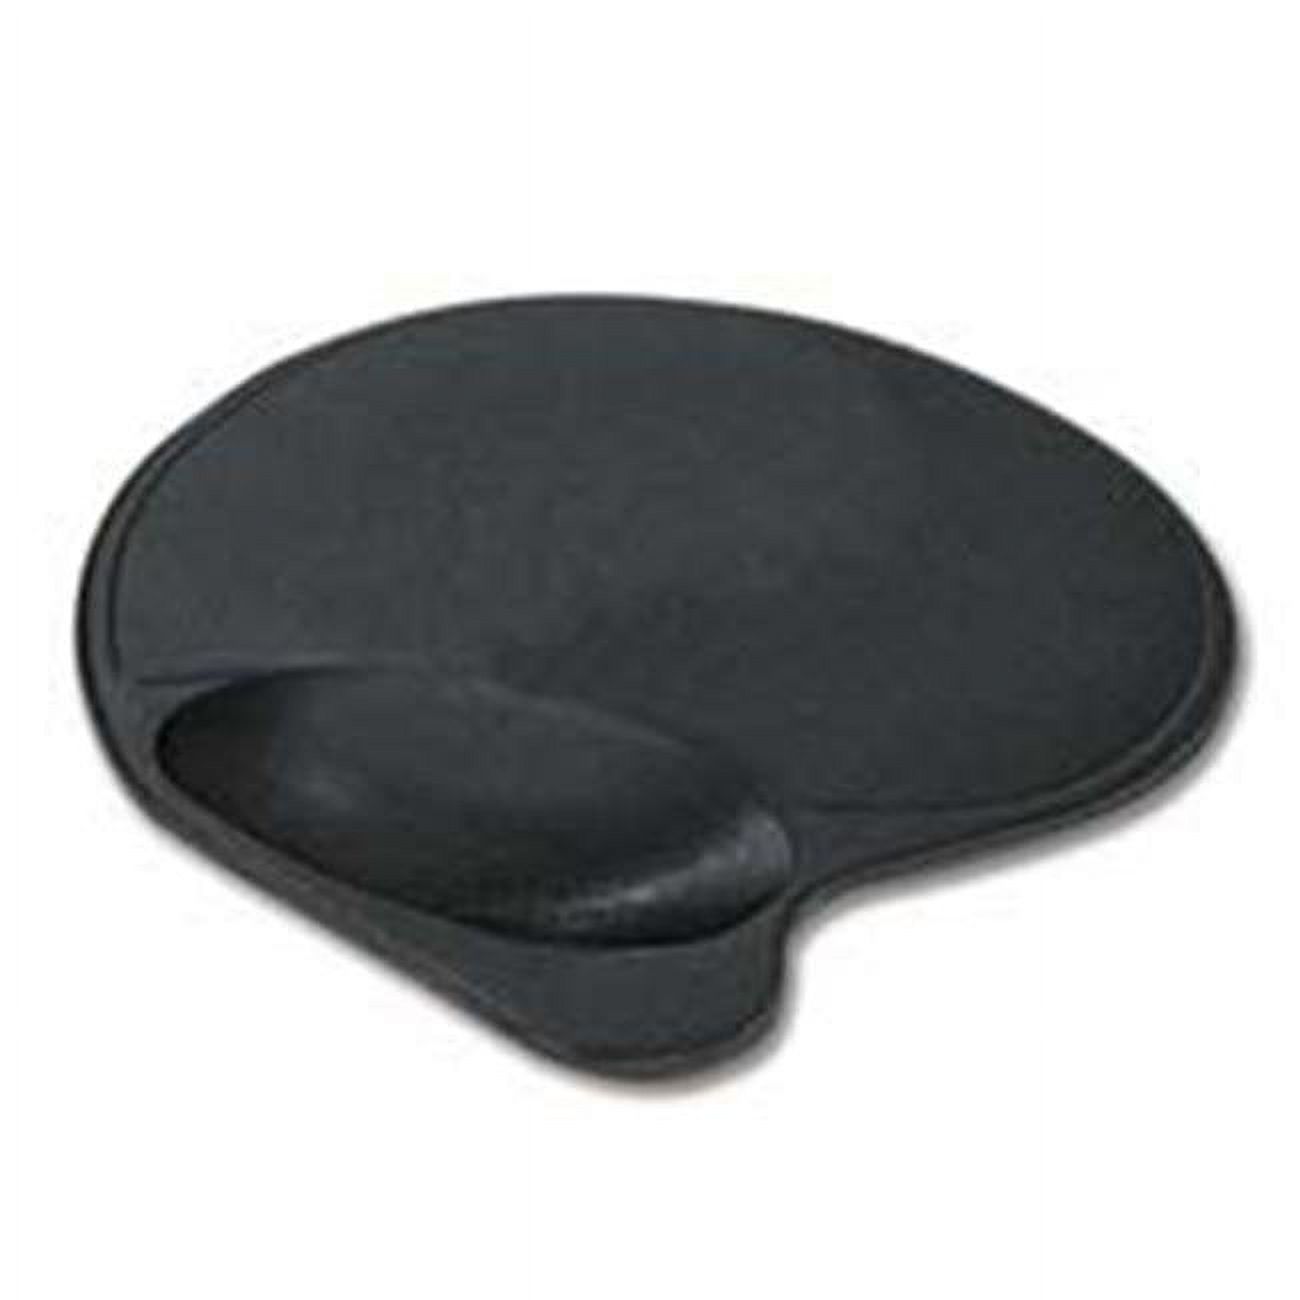 Kensington Mouse Wrist Pillow Rest 0.90" x 10.90" x 7.90" Dimension - Black - Fabric - image 1 of 3